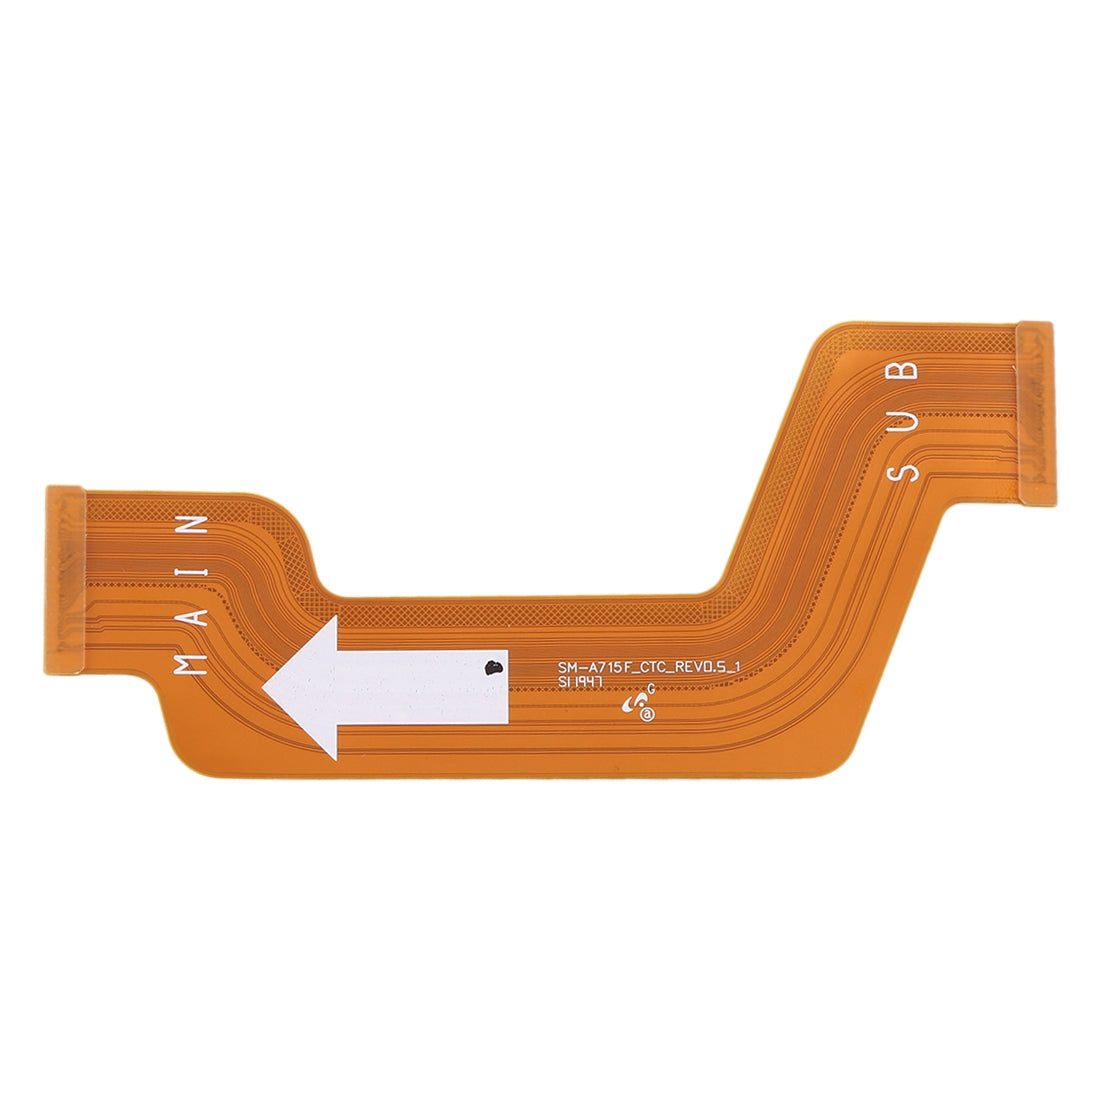 Board Connector Flex Cable Samsung Galaxy A71